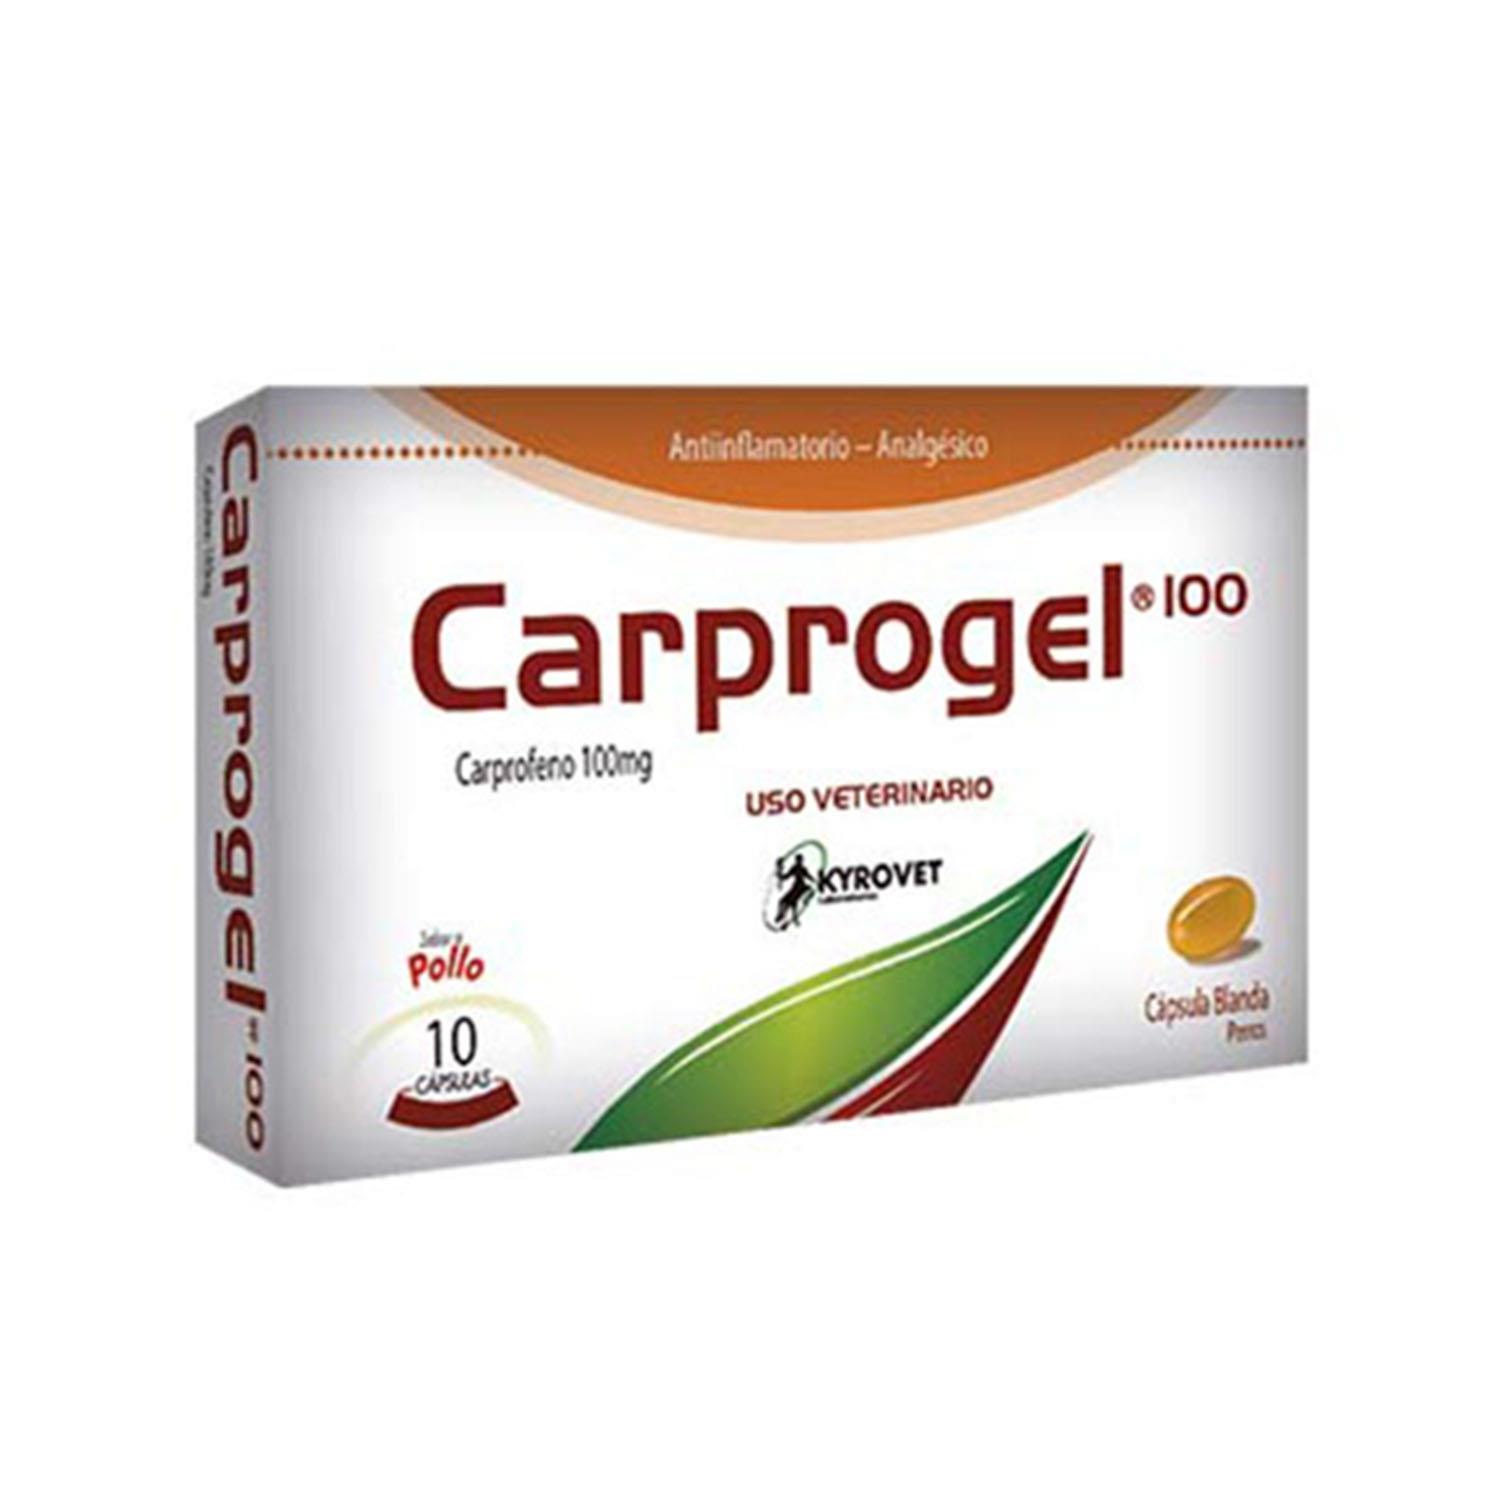 CARPROGEL 100 mg CAJA X 10 CAPSULAS